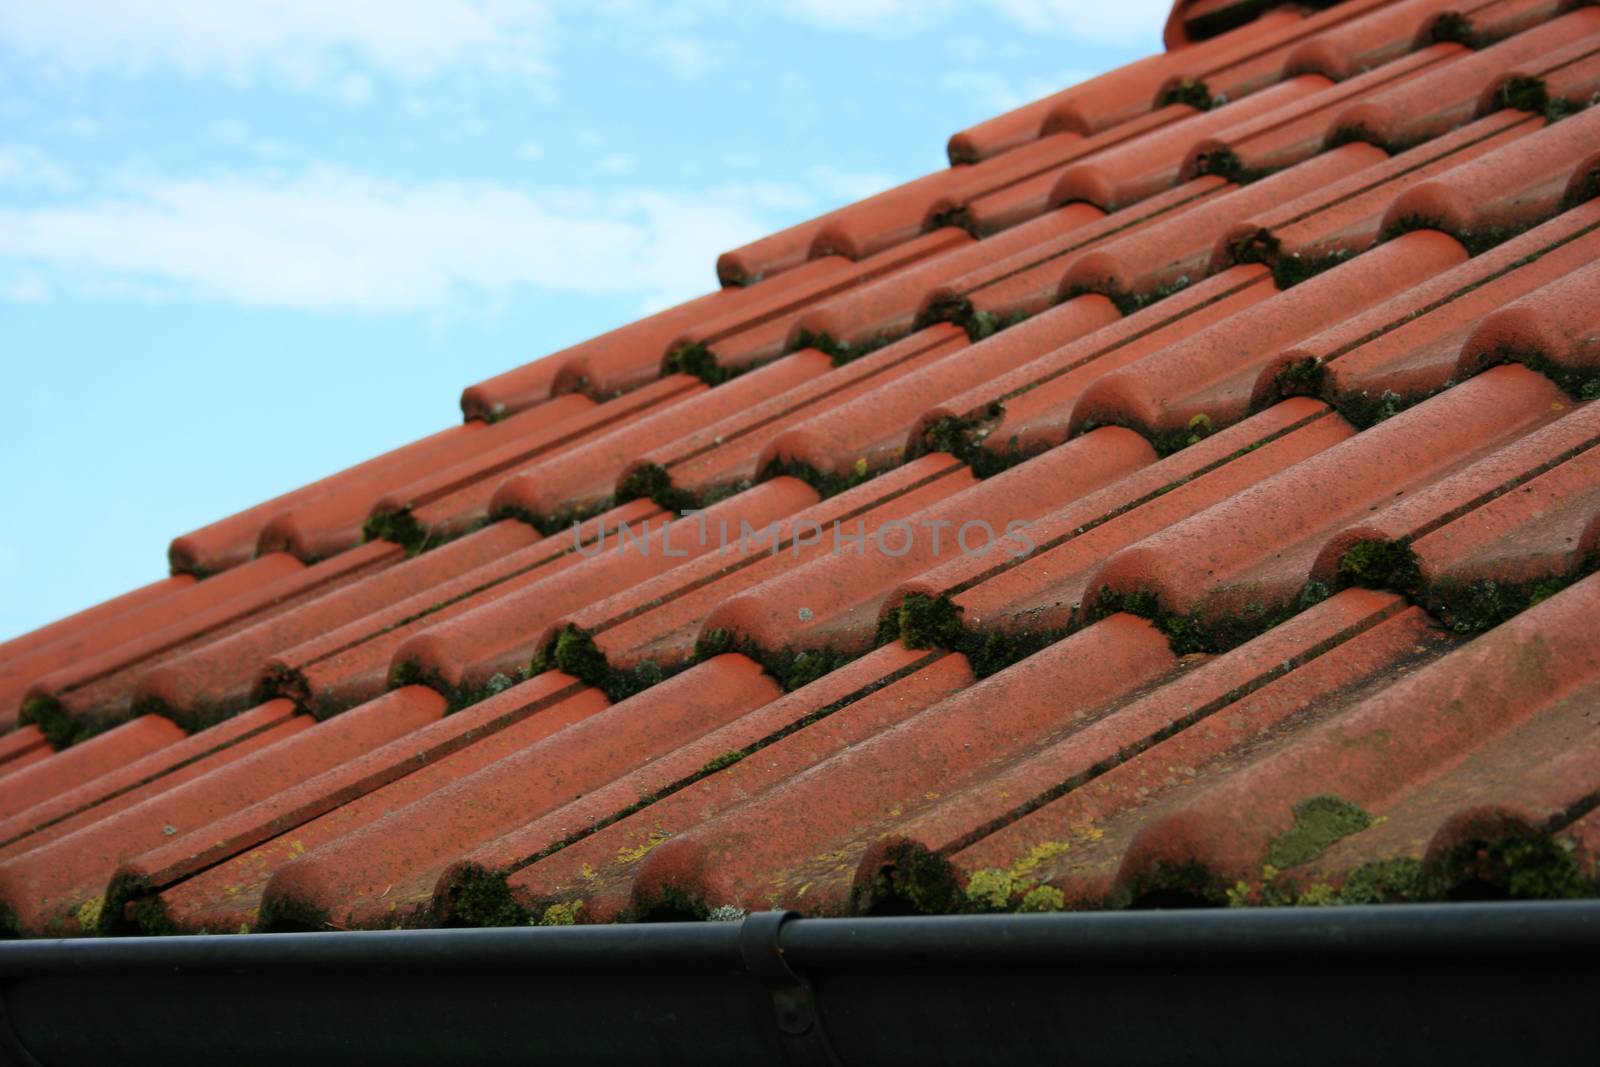 Tile roof covered with red tiles, overgrown with moss  Ziegeldach eingedeckt mit roten Dachziegel,mit Moos bewachsen